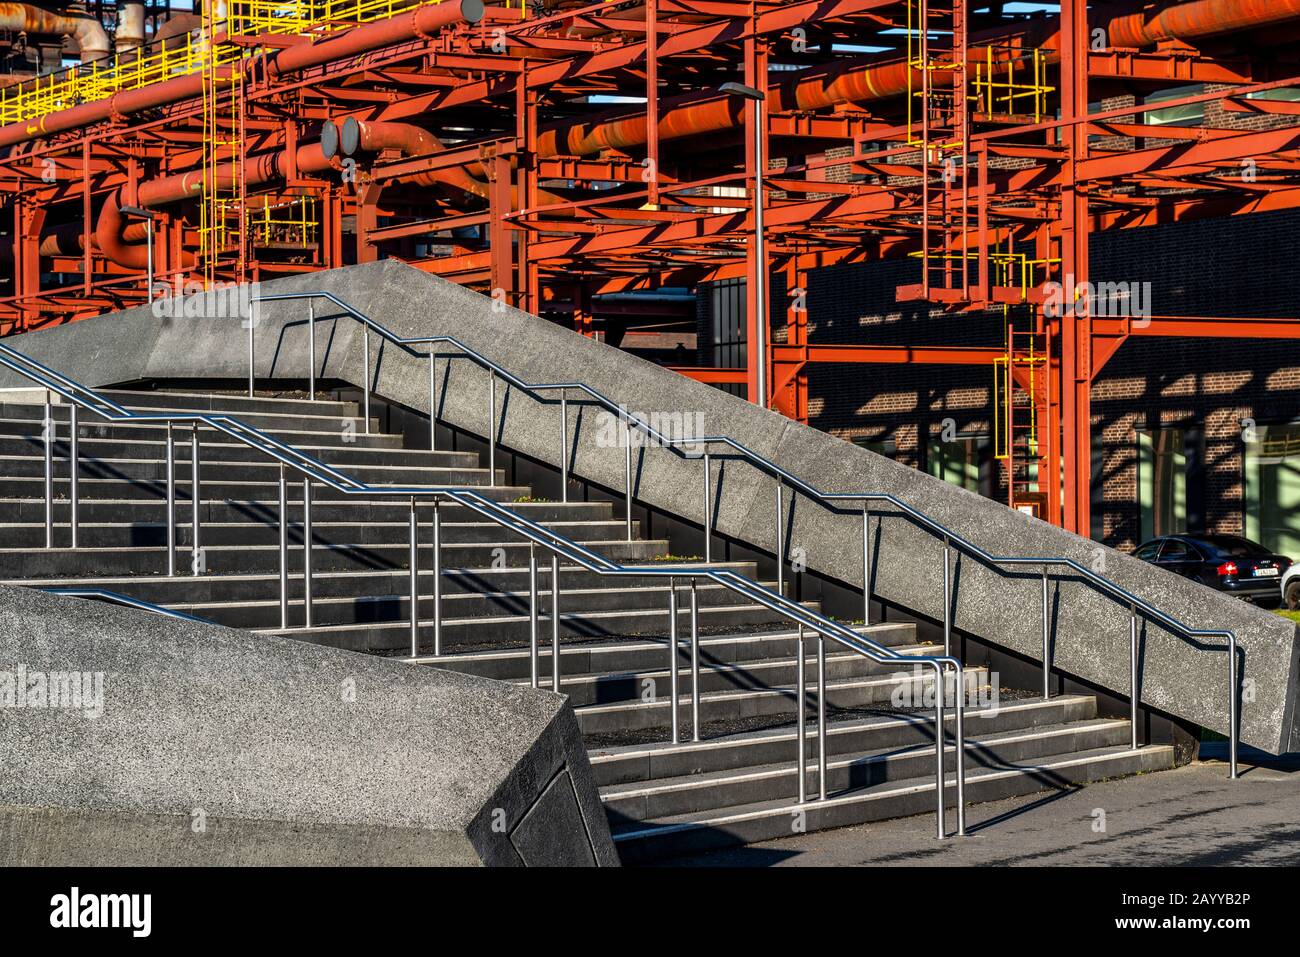 Patrimonio de la Humanidad Colliery Zollverein, planta de coque Zollverein, puentes de tuberías, escalera al parque en el aparcamiento de varios pisos, Essen, Alemania Foto de stock